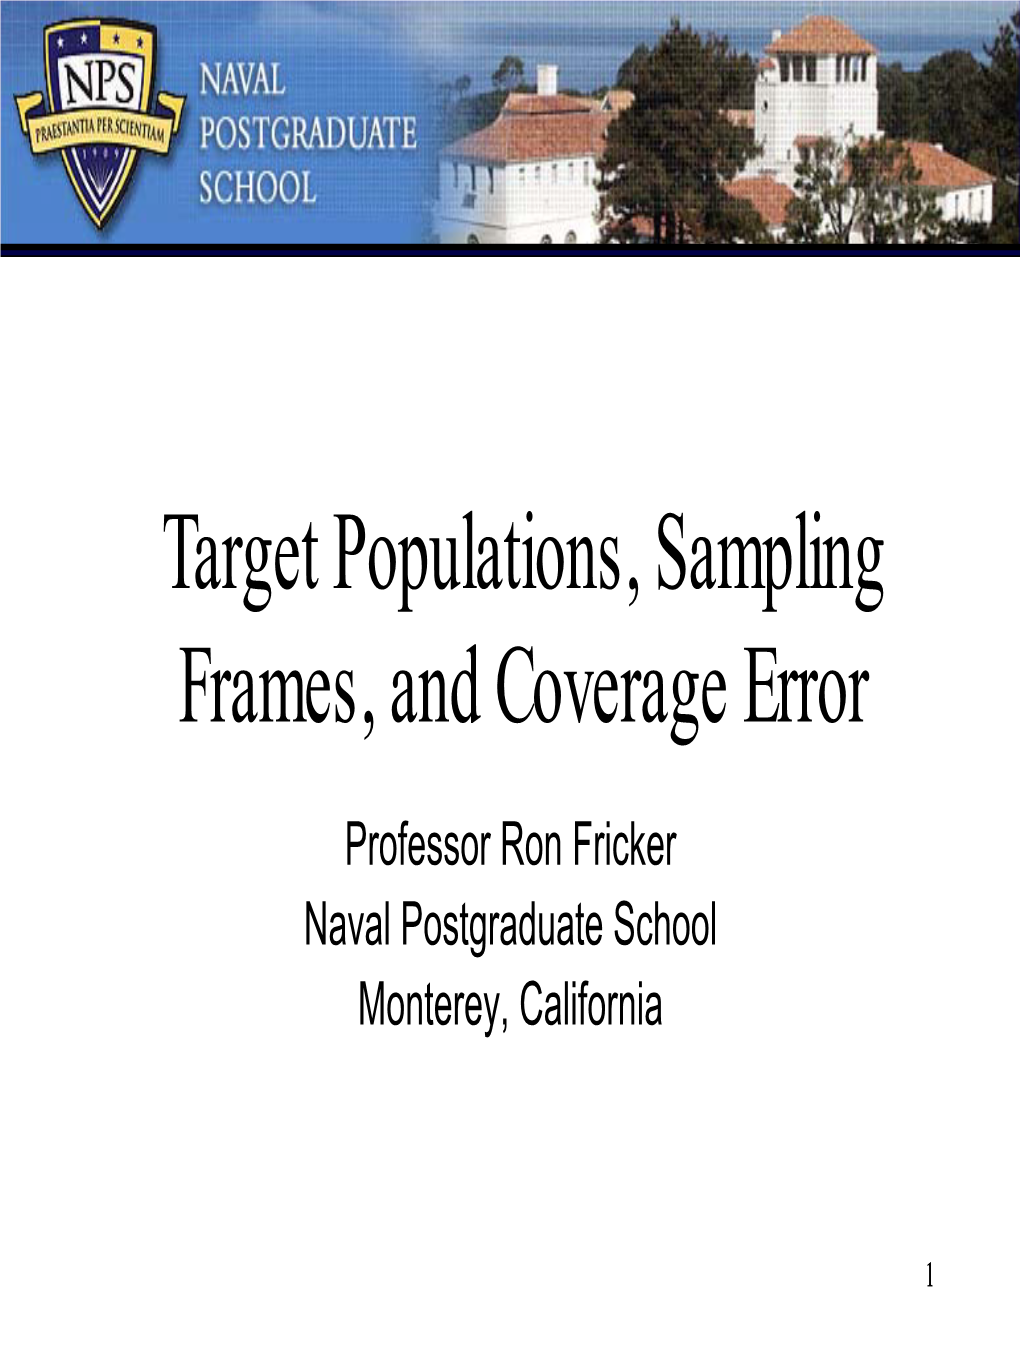 Target Populations, Sampling Frames, and Coverage Error